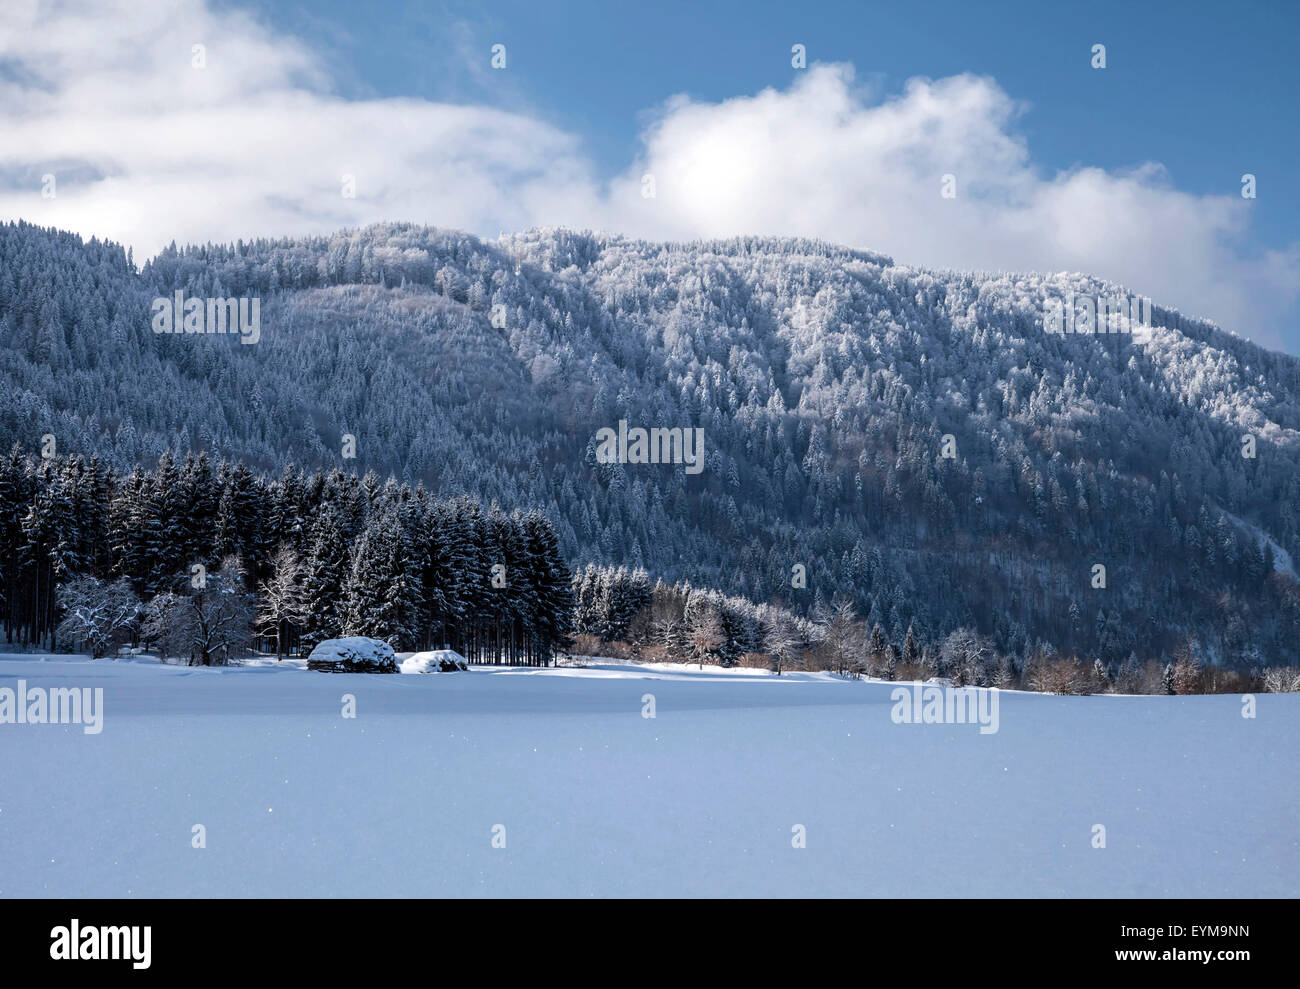 Winterlandschaft am Dreiländereck bei Arnoldstein, Kärnten, Österreich Foto Stock